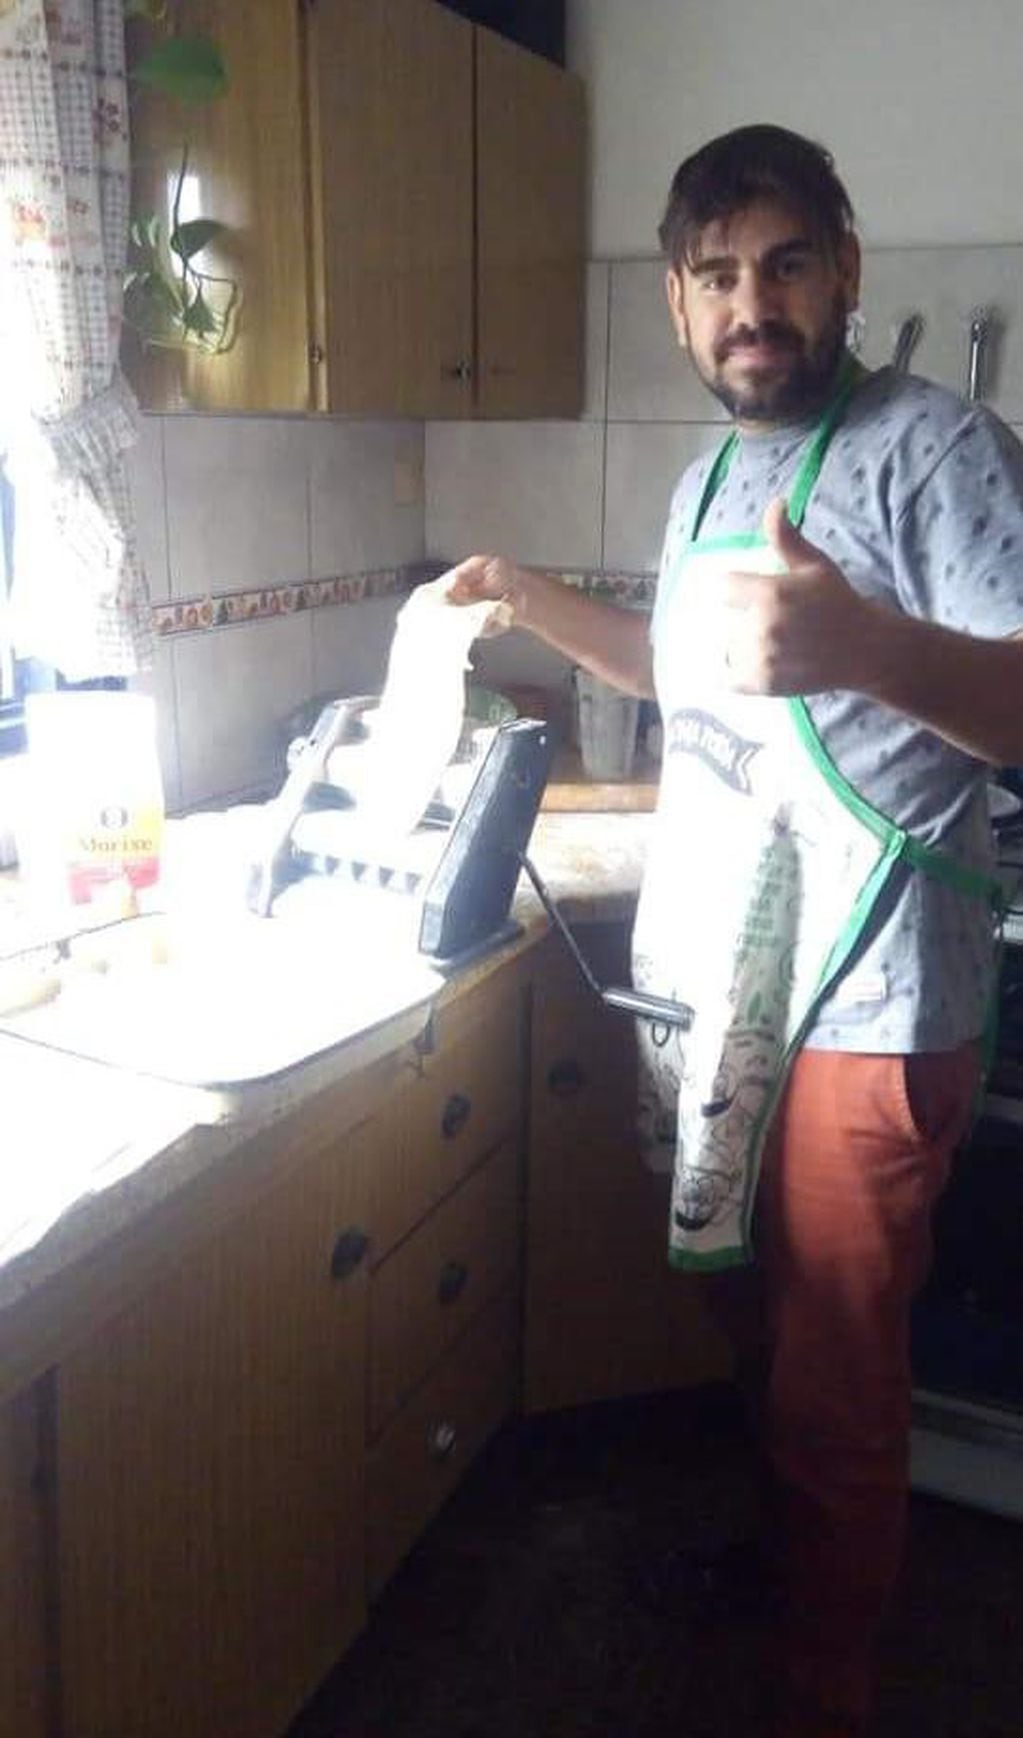 Luciano cocinando las pastas. (Foto: gentileza Natalia Roques).